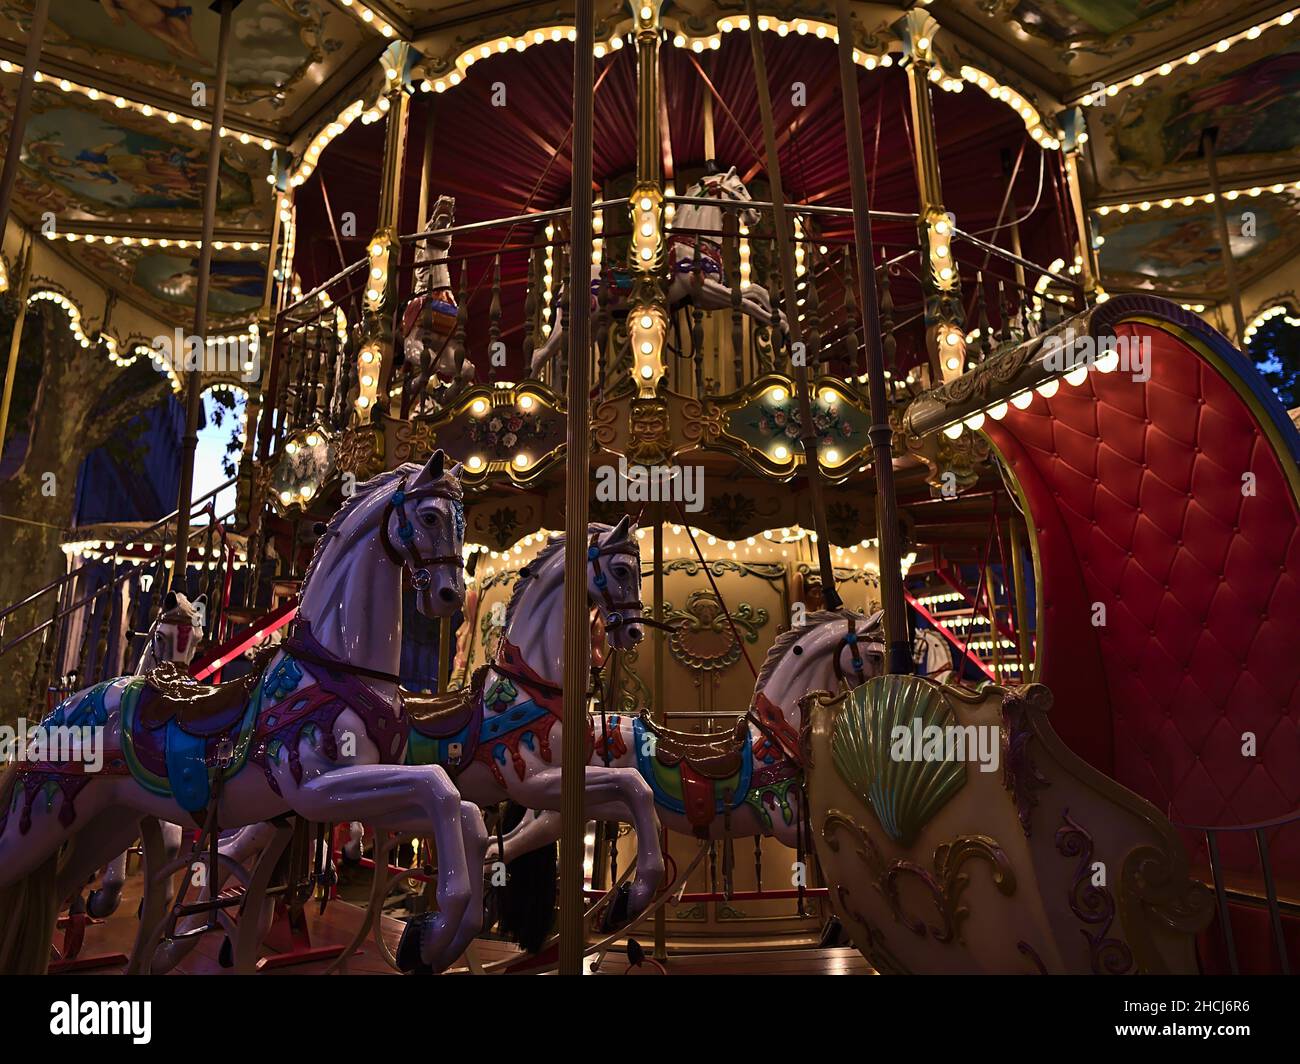 Vue rapprochée d'un manège illuminé pour les enfants dans le centre d'Avignon, Provence, France en soirée avec des chevaux colorés décorés. Banque D'Images